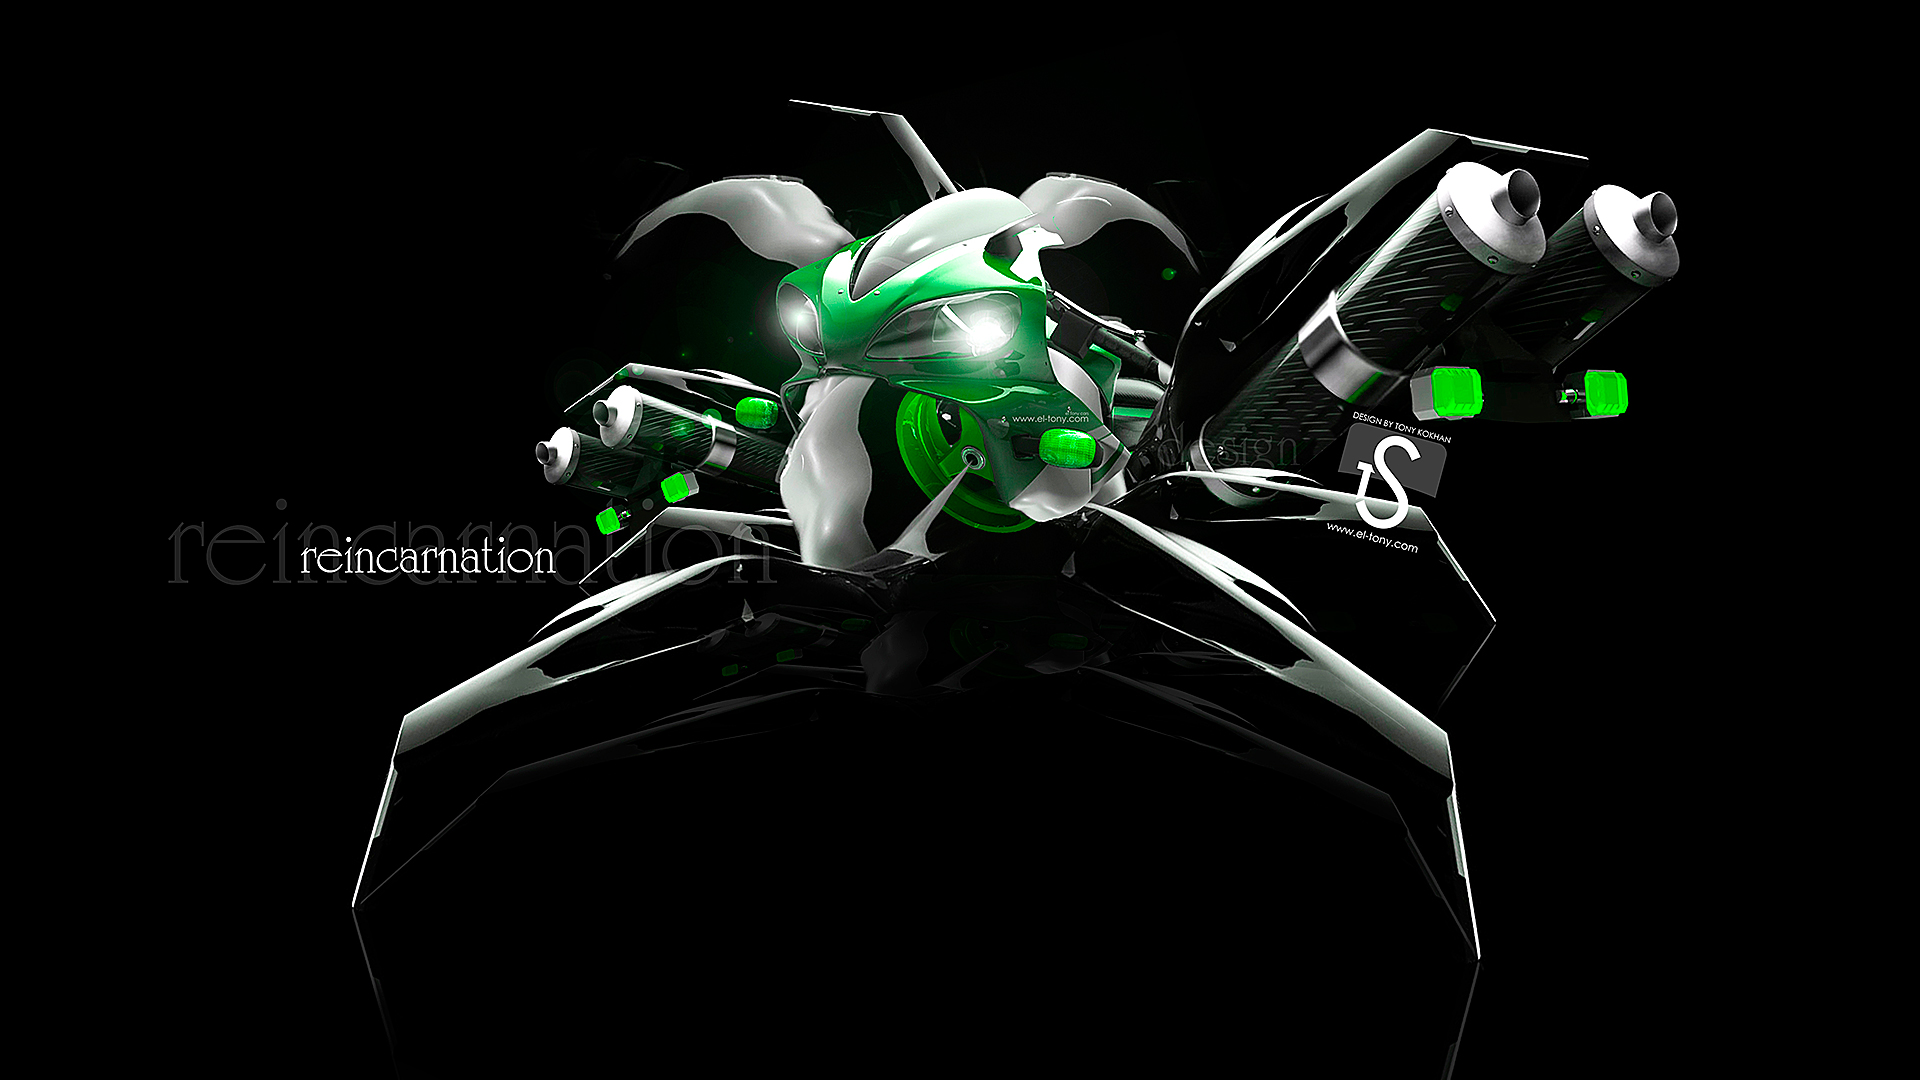 Reincarnation Moto Green Robot Car HD Wallpaper Design By